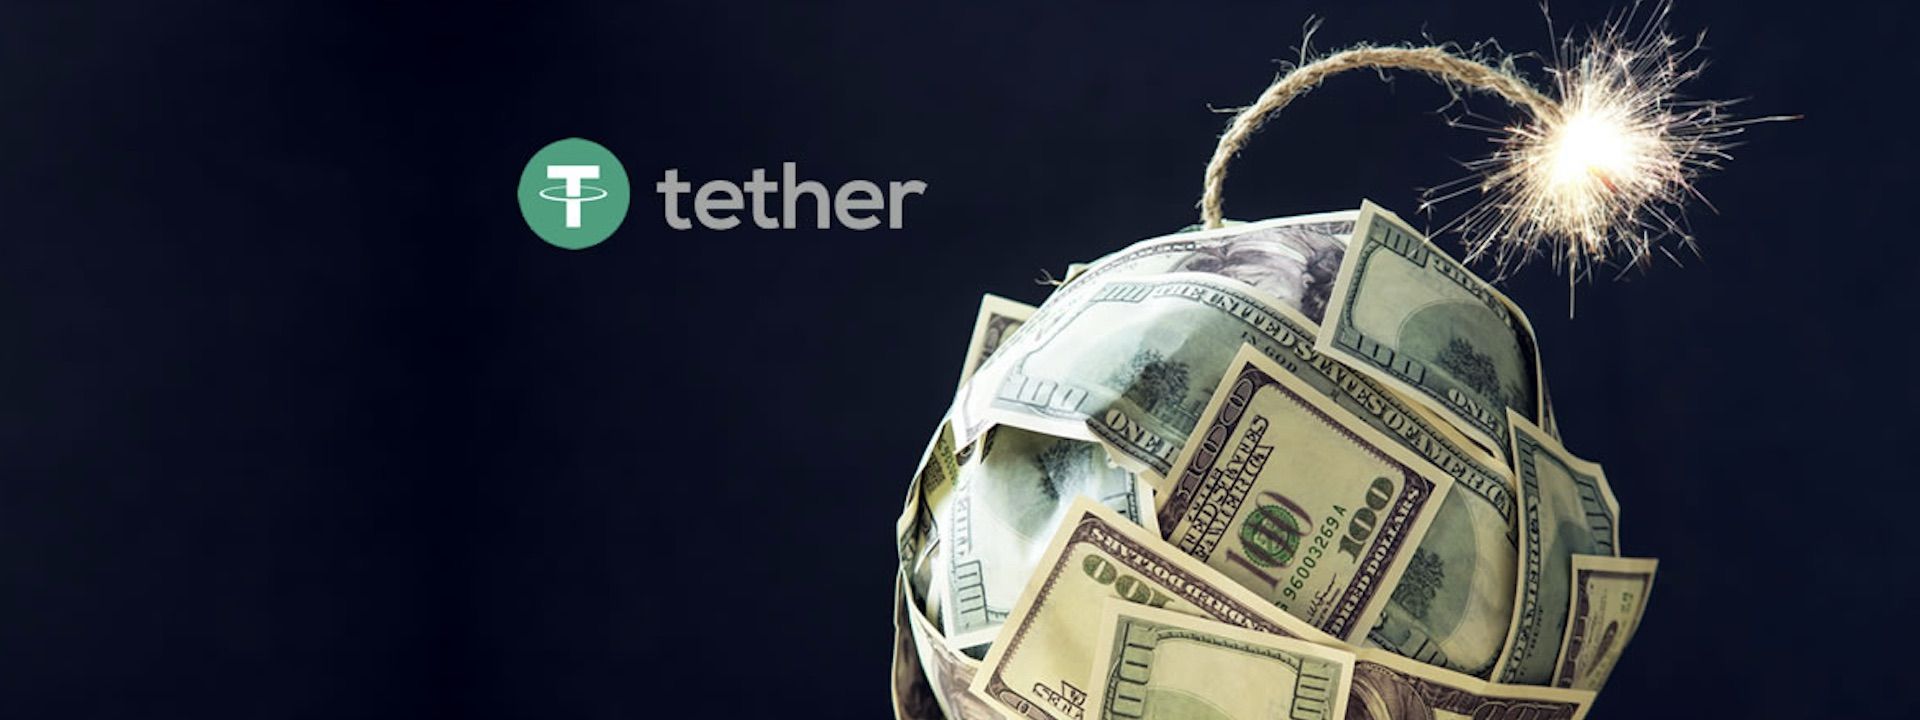 Tether có đối tác ngân hàng mới giữa nghi vấn của cộng đồng crypto?